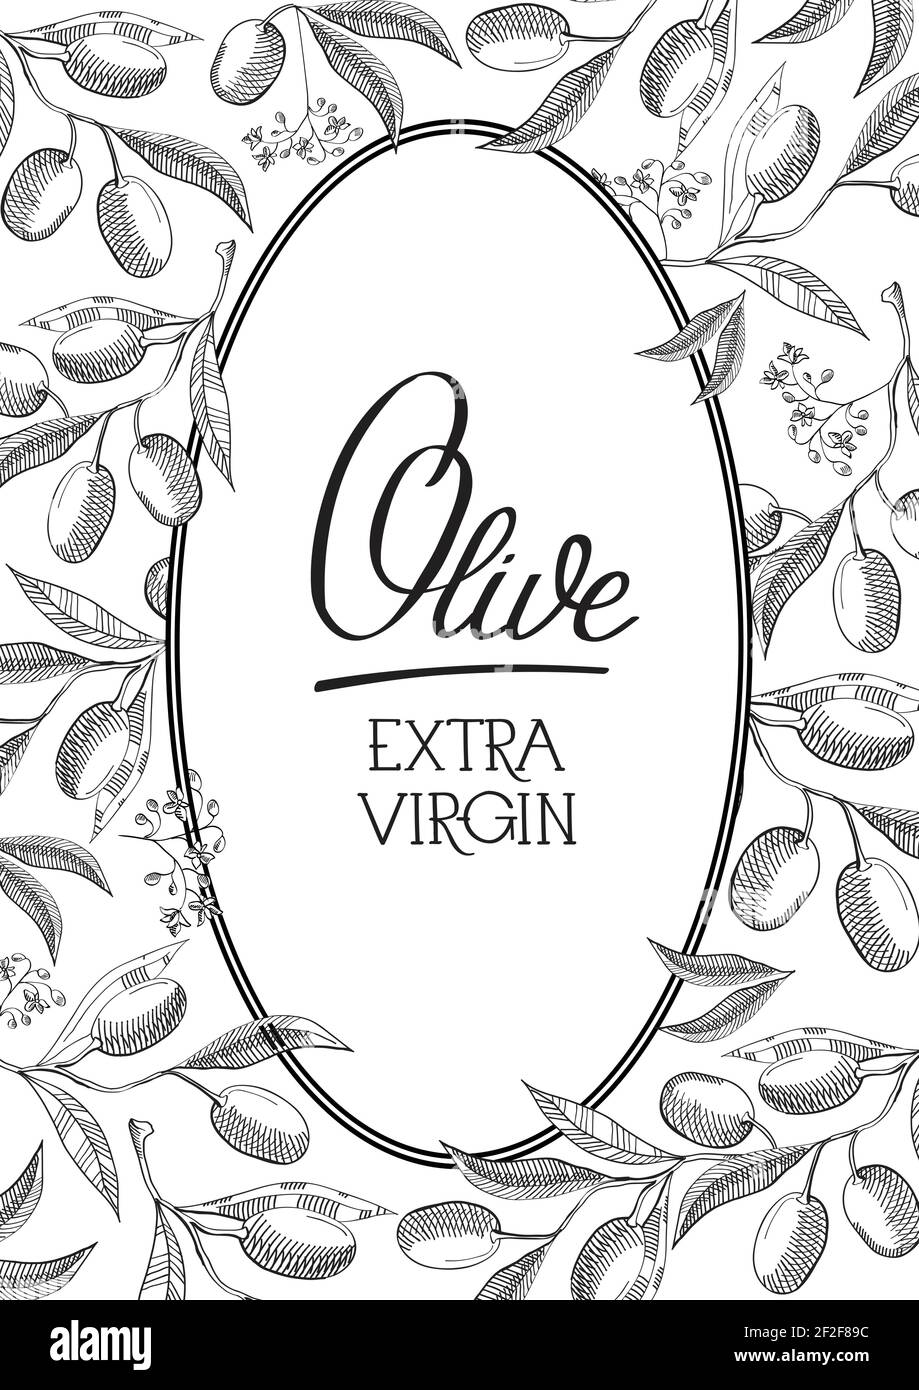 Extra vergine di oliva ovale cornice nera colorata composizione cartolina con belle fioriture, numerose olive e parola sottolineato olive doodle disegno a mano Illustrazione Vettoriale